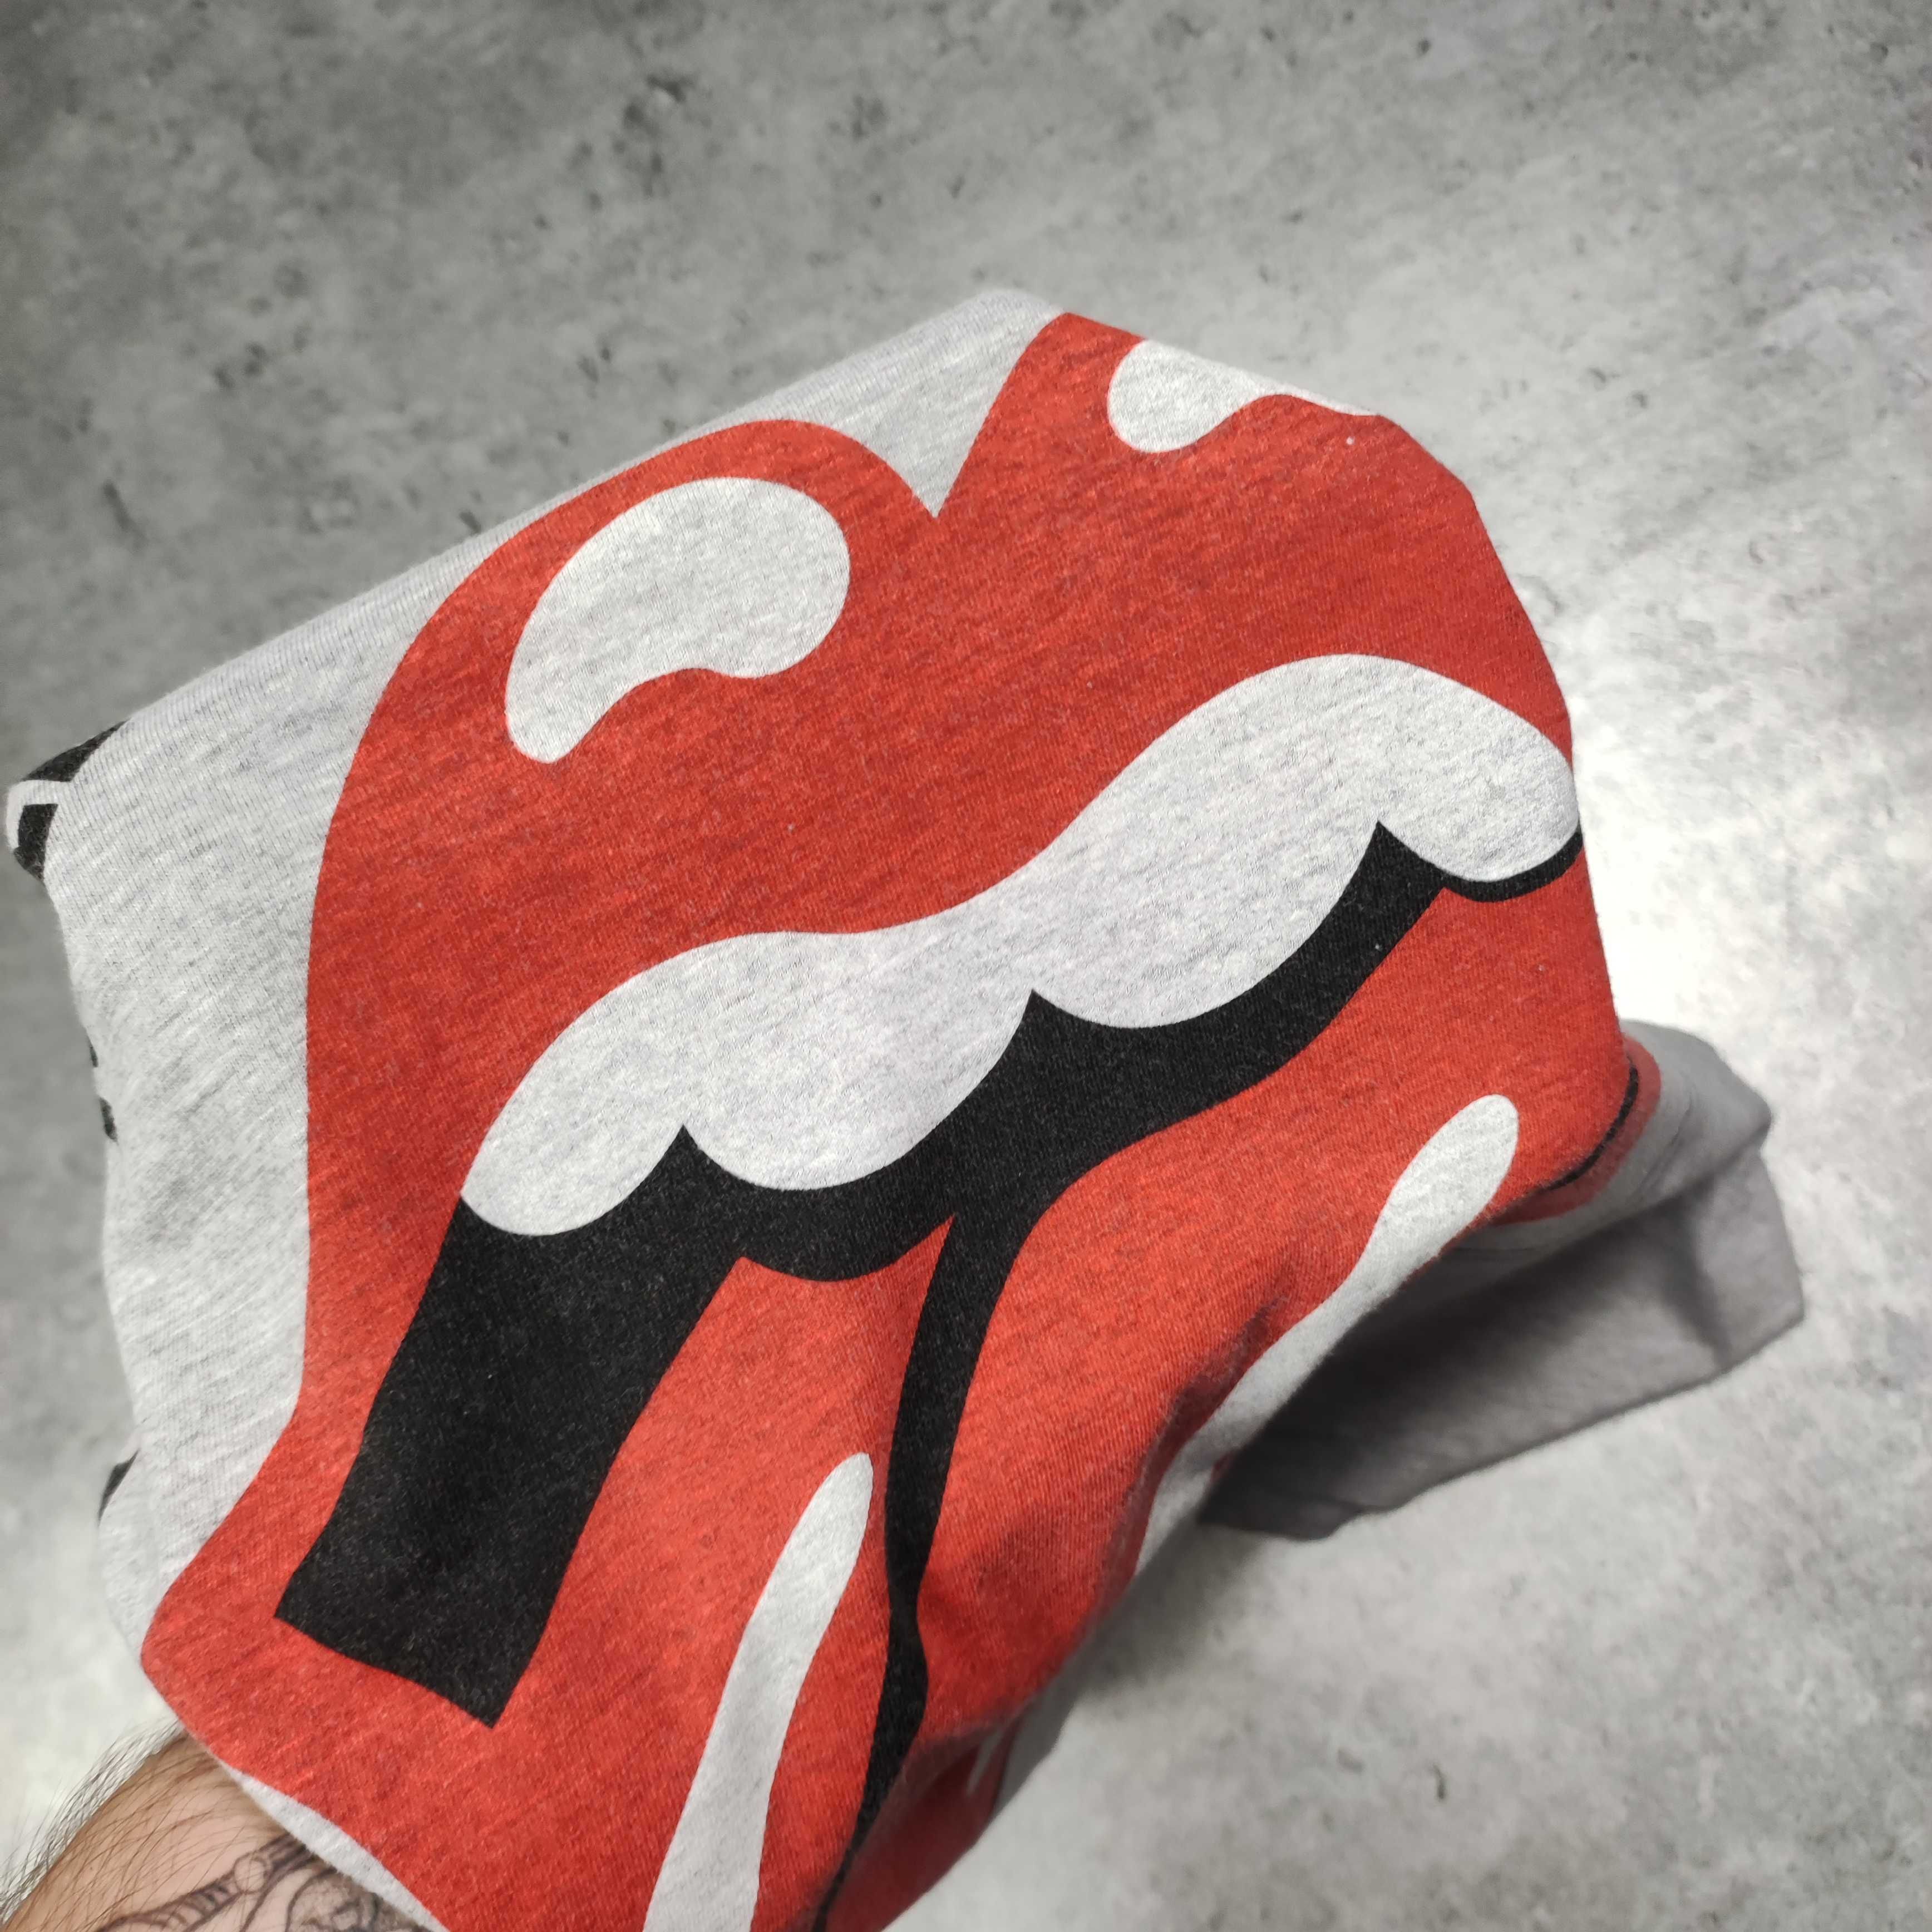 MĘSKA Retro Vintage Oficjalna Koszulka 50lecie The Rolling Stones